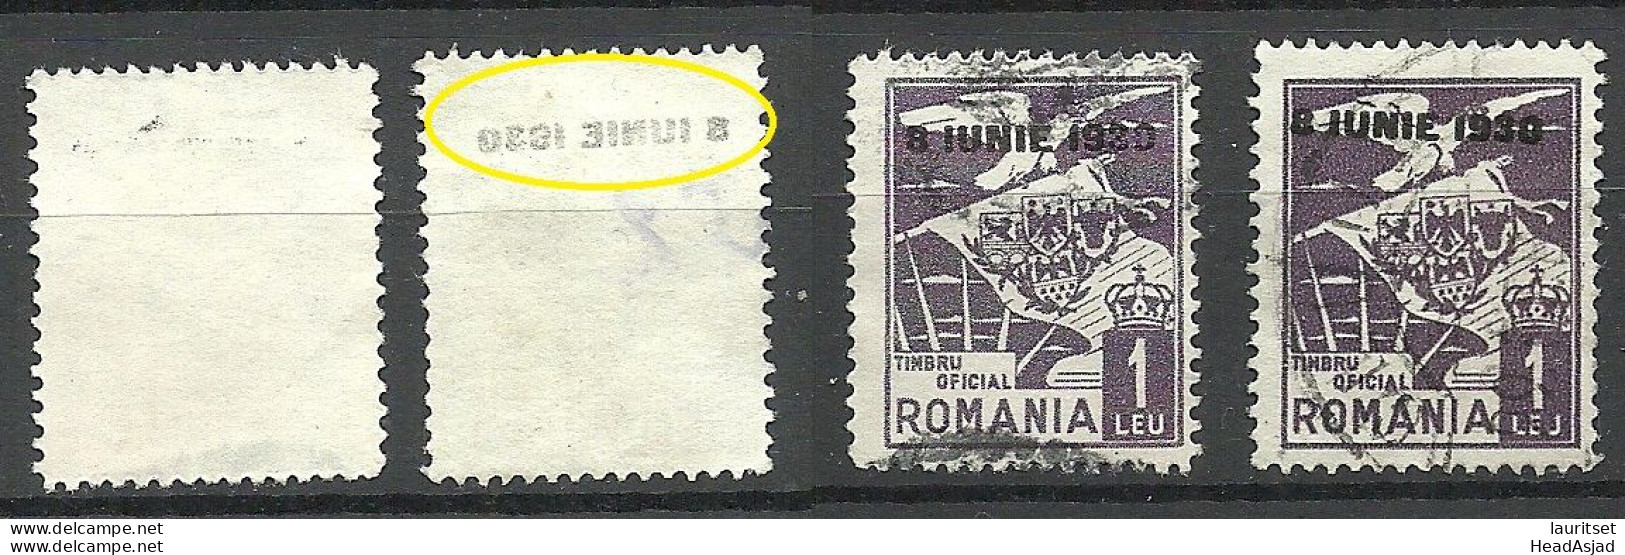 ROMANIA Rumänien 1930 Dienstmarke Normal + Variety Set Off Of OPT Abklatsch D. Aufdruckes - Officials